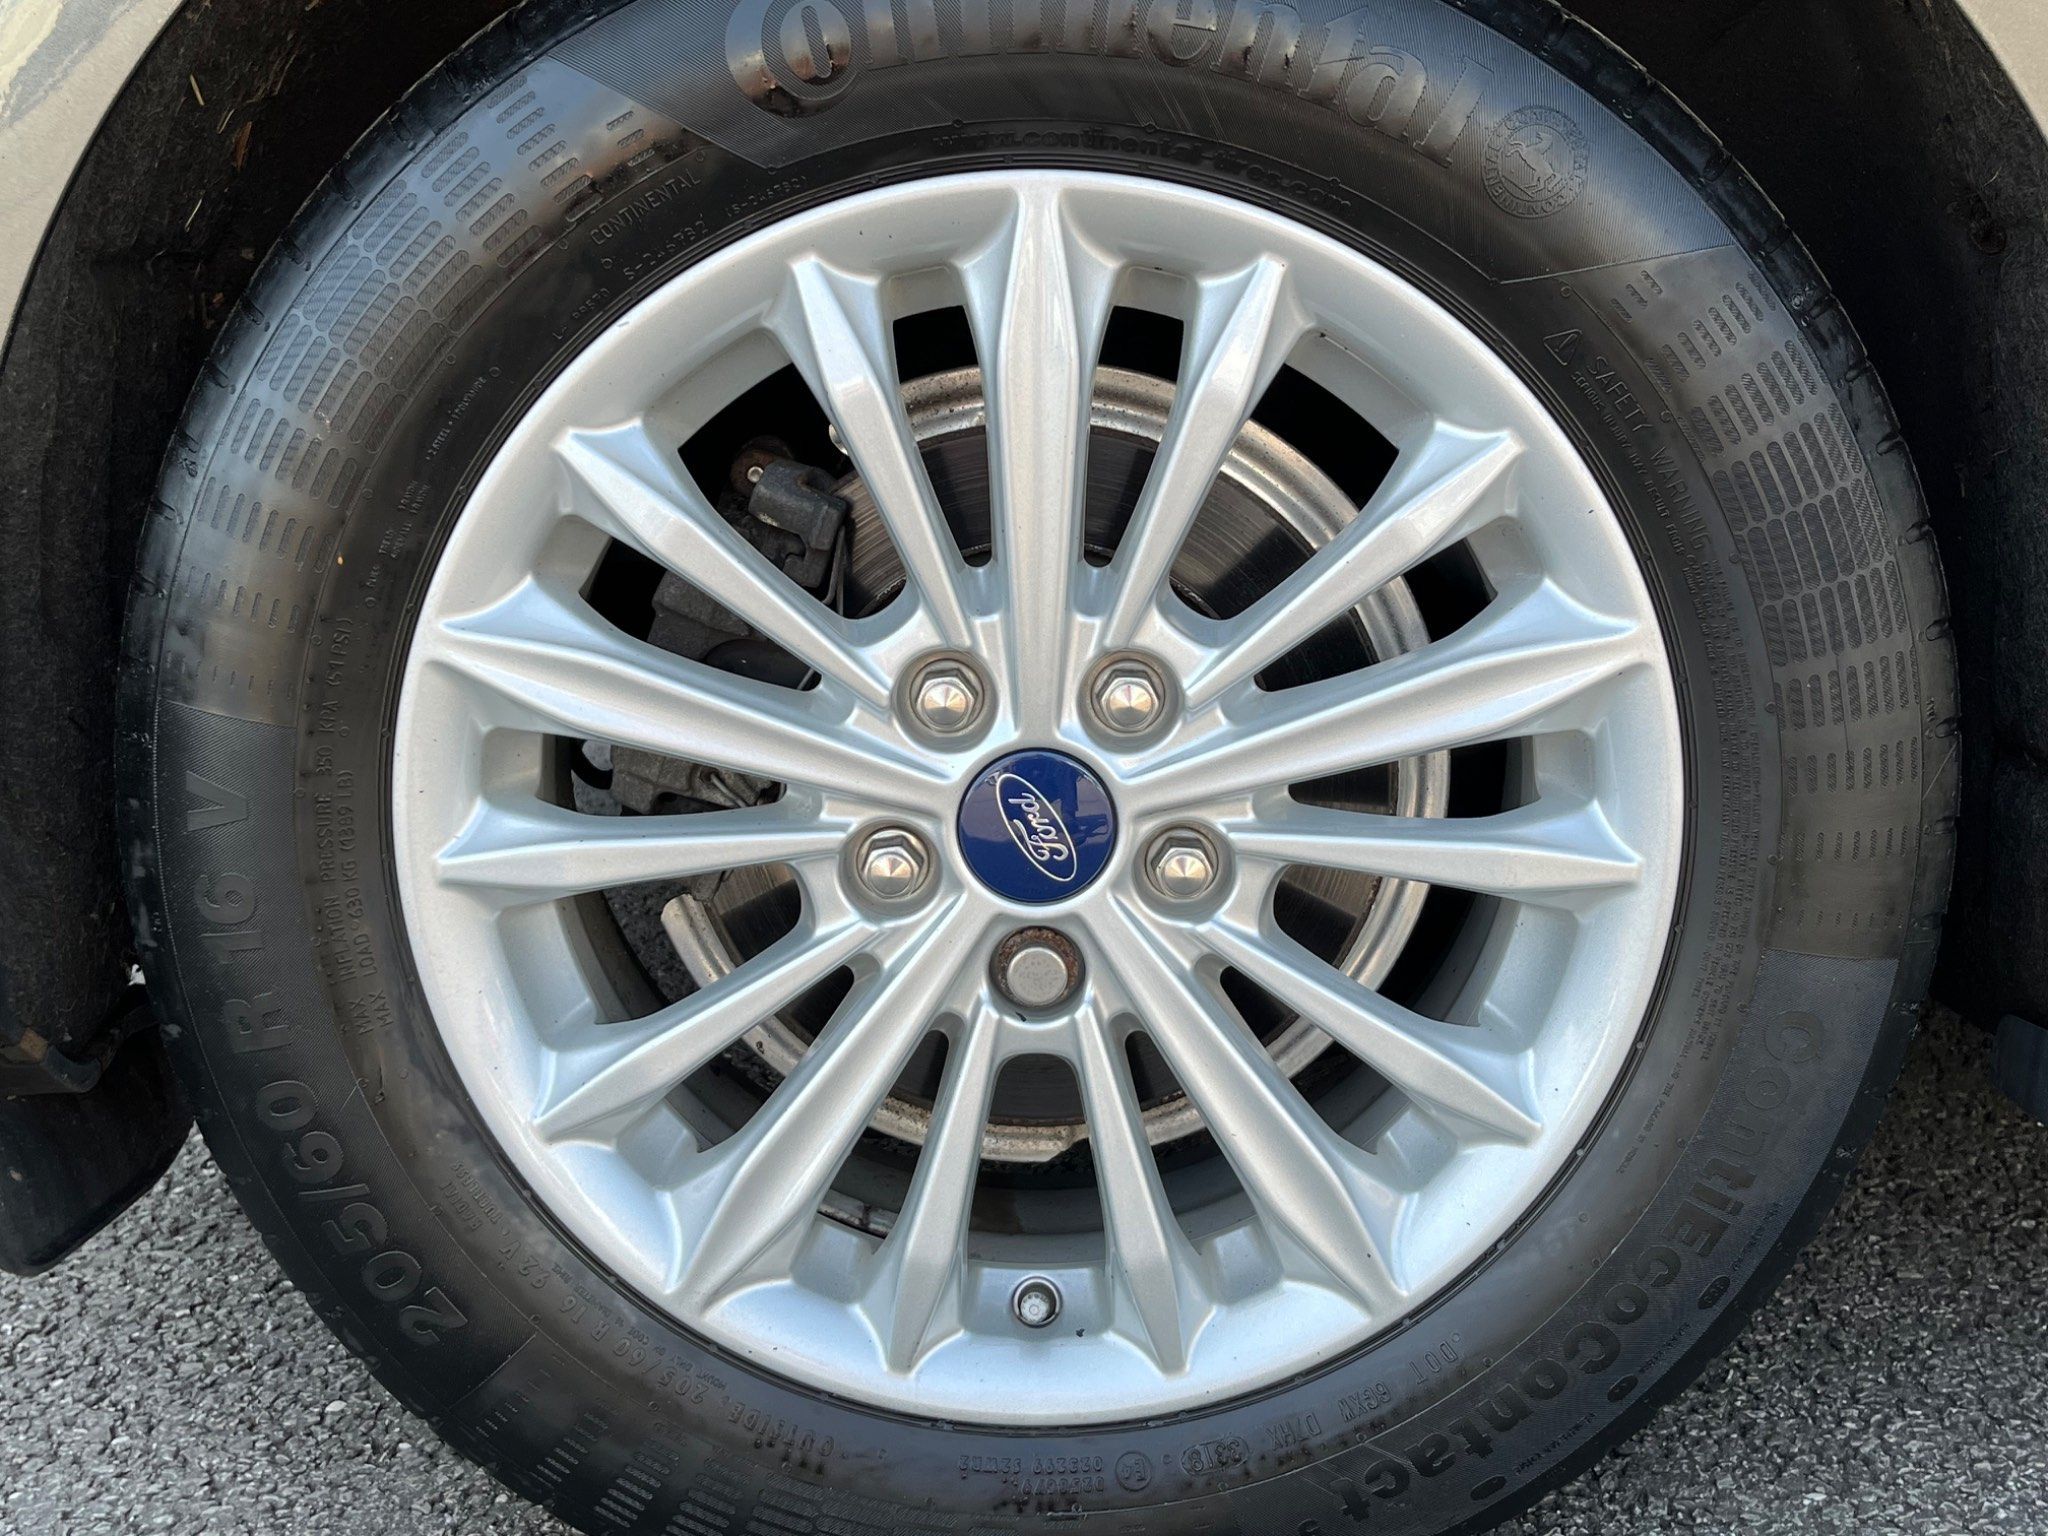 2019 Ford Focus EcoBoost Titanium Euro 6 full